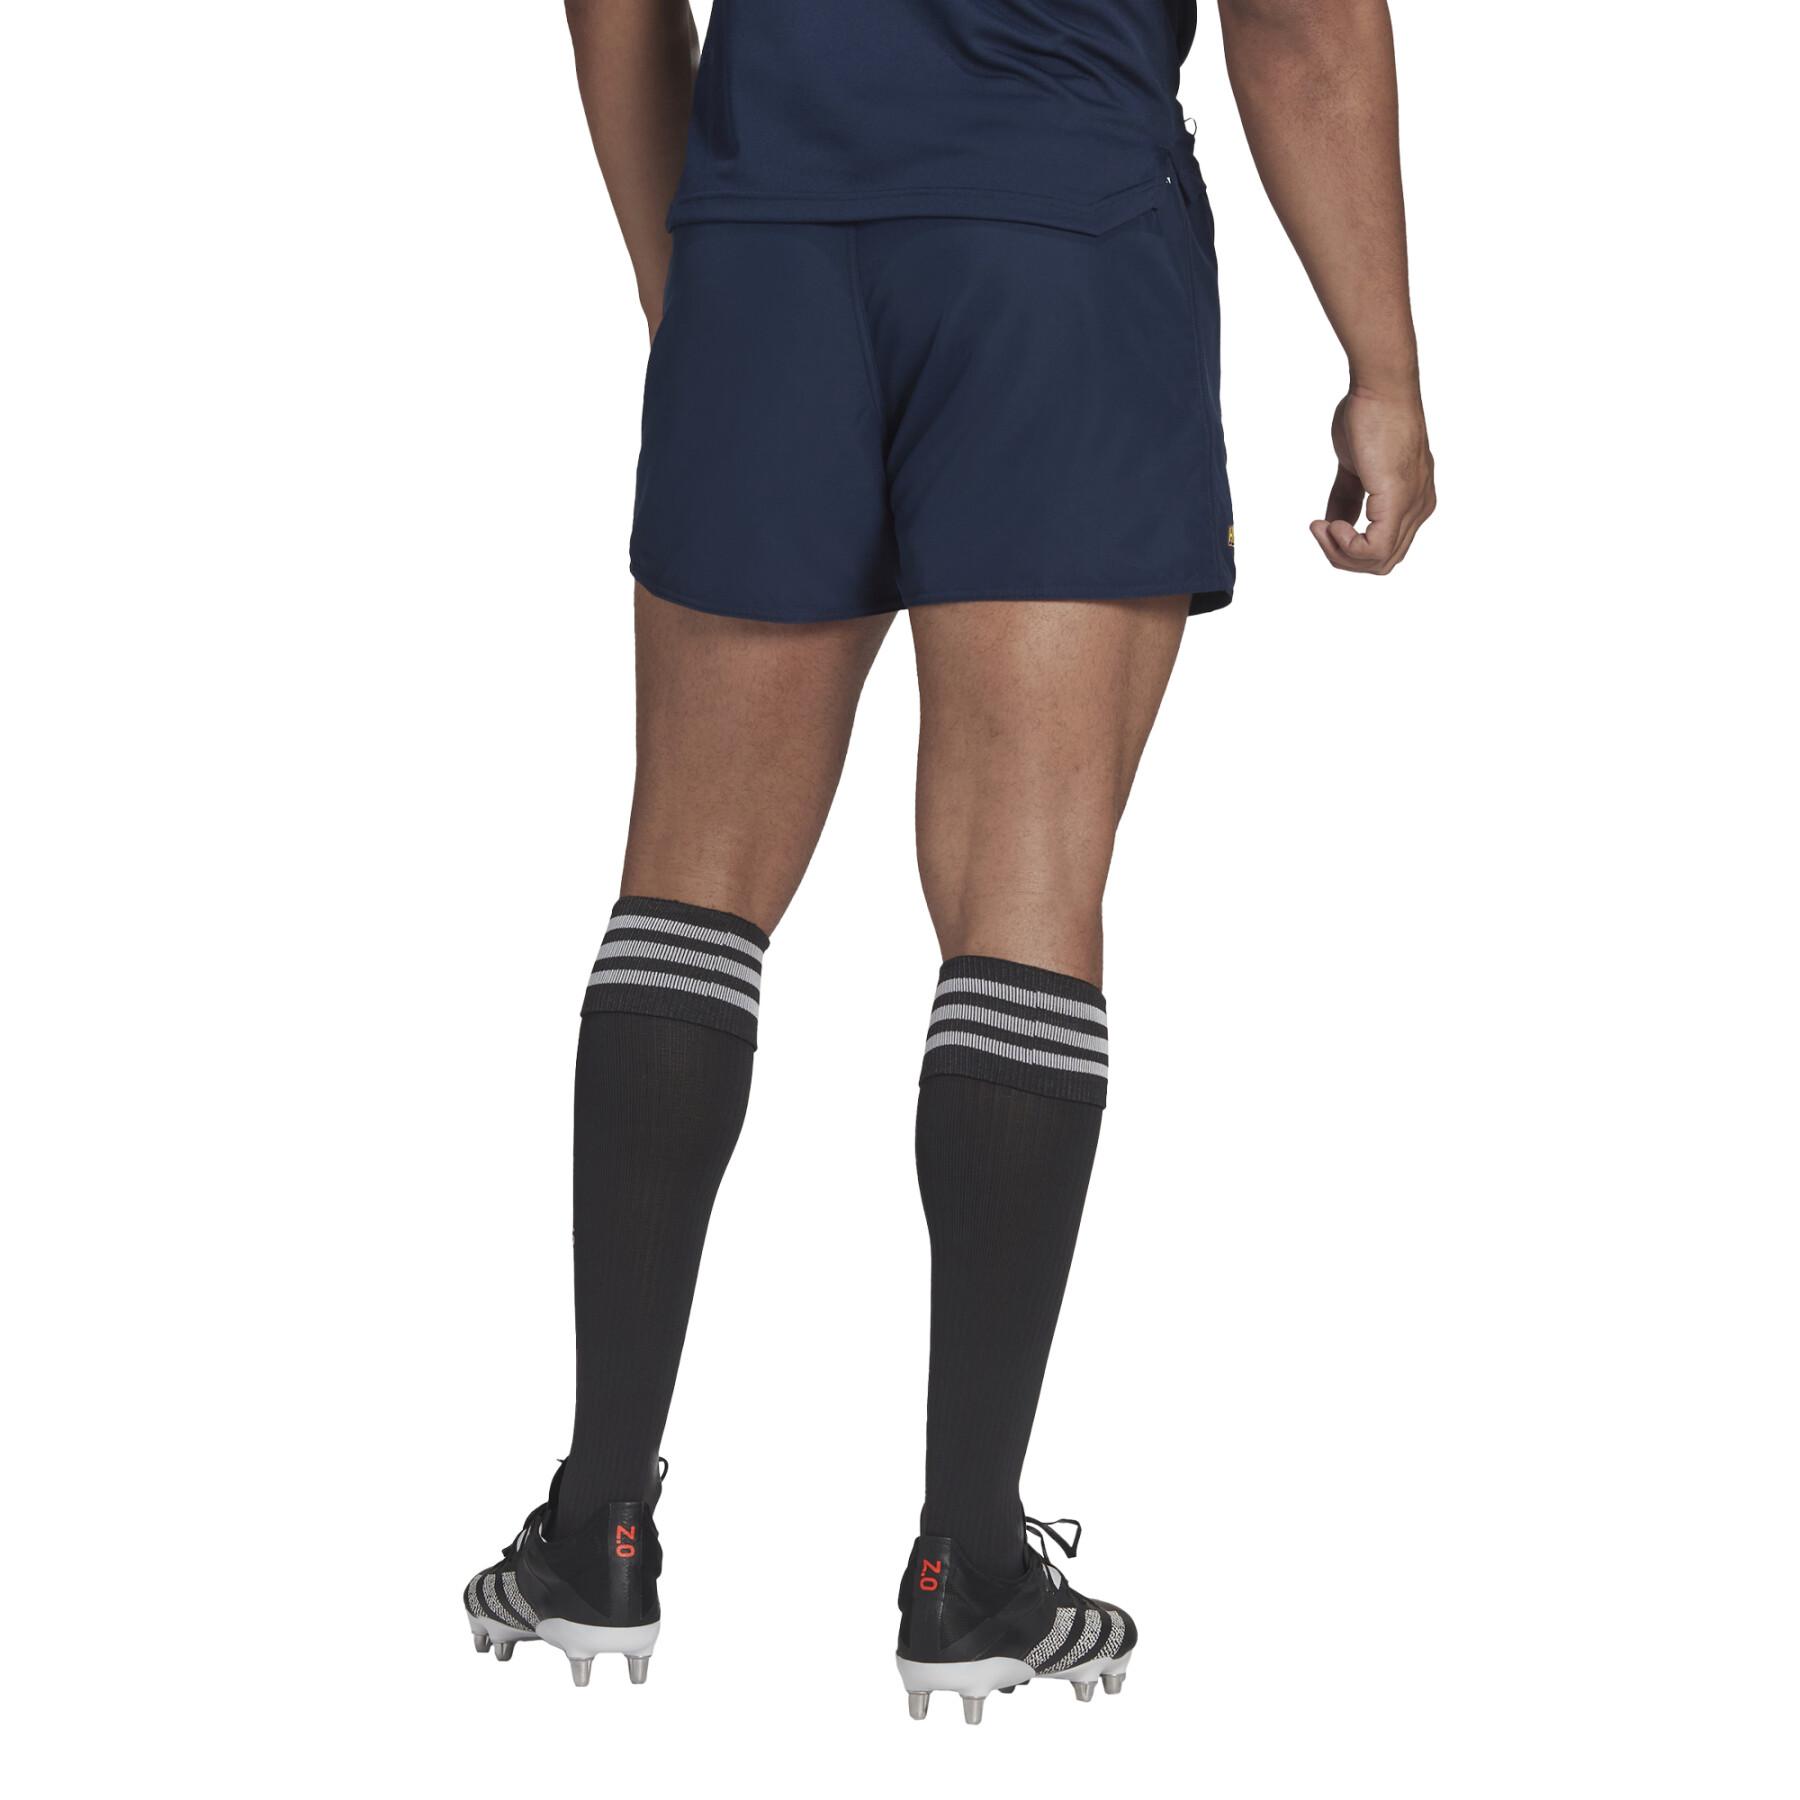 Pantalones cortos para el hogar Highlanders Supporters 2021/22